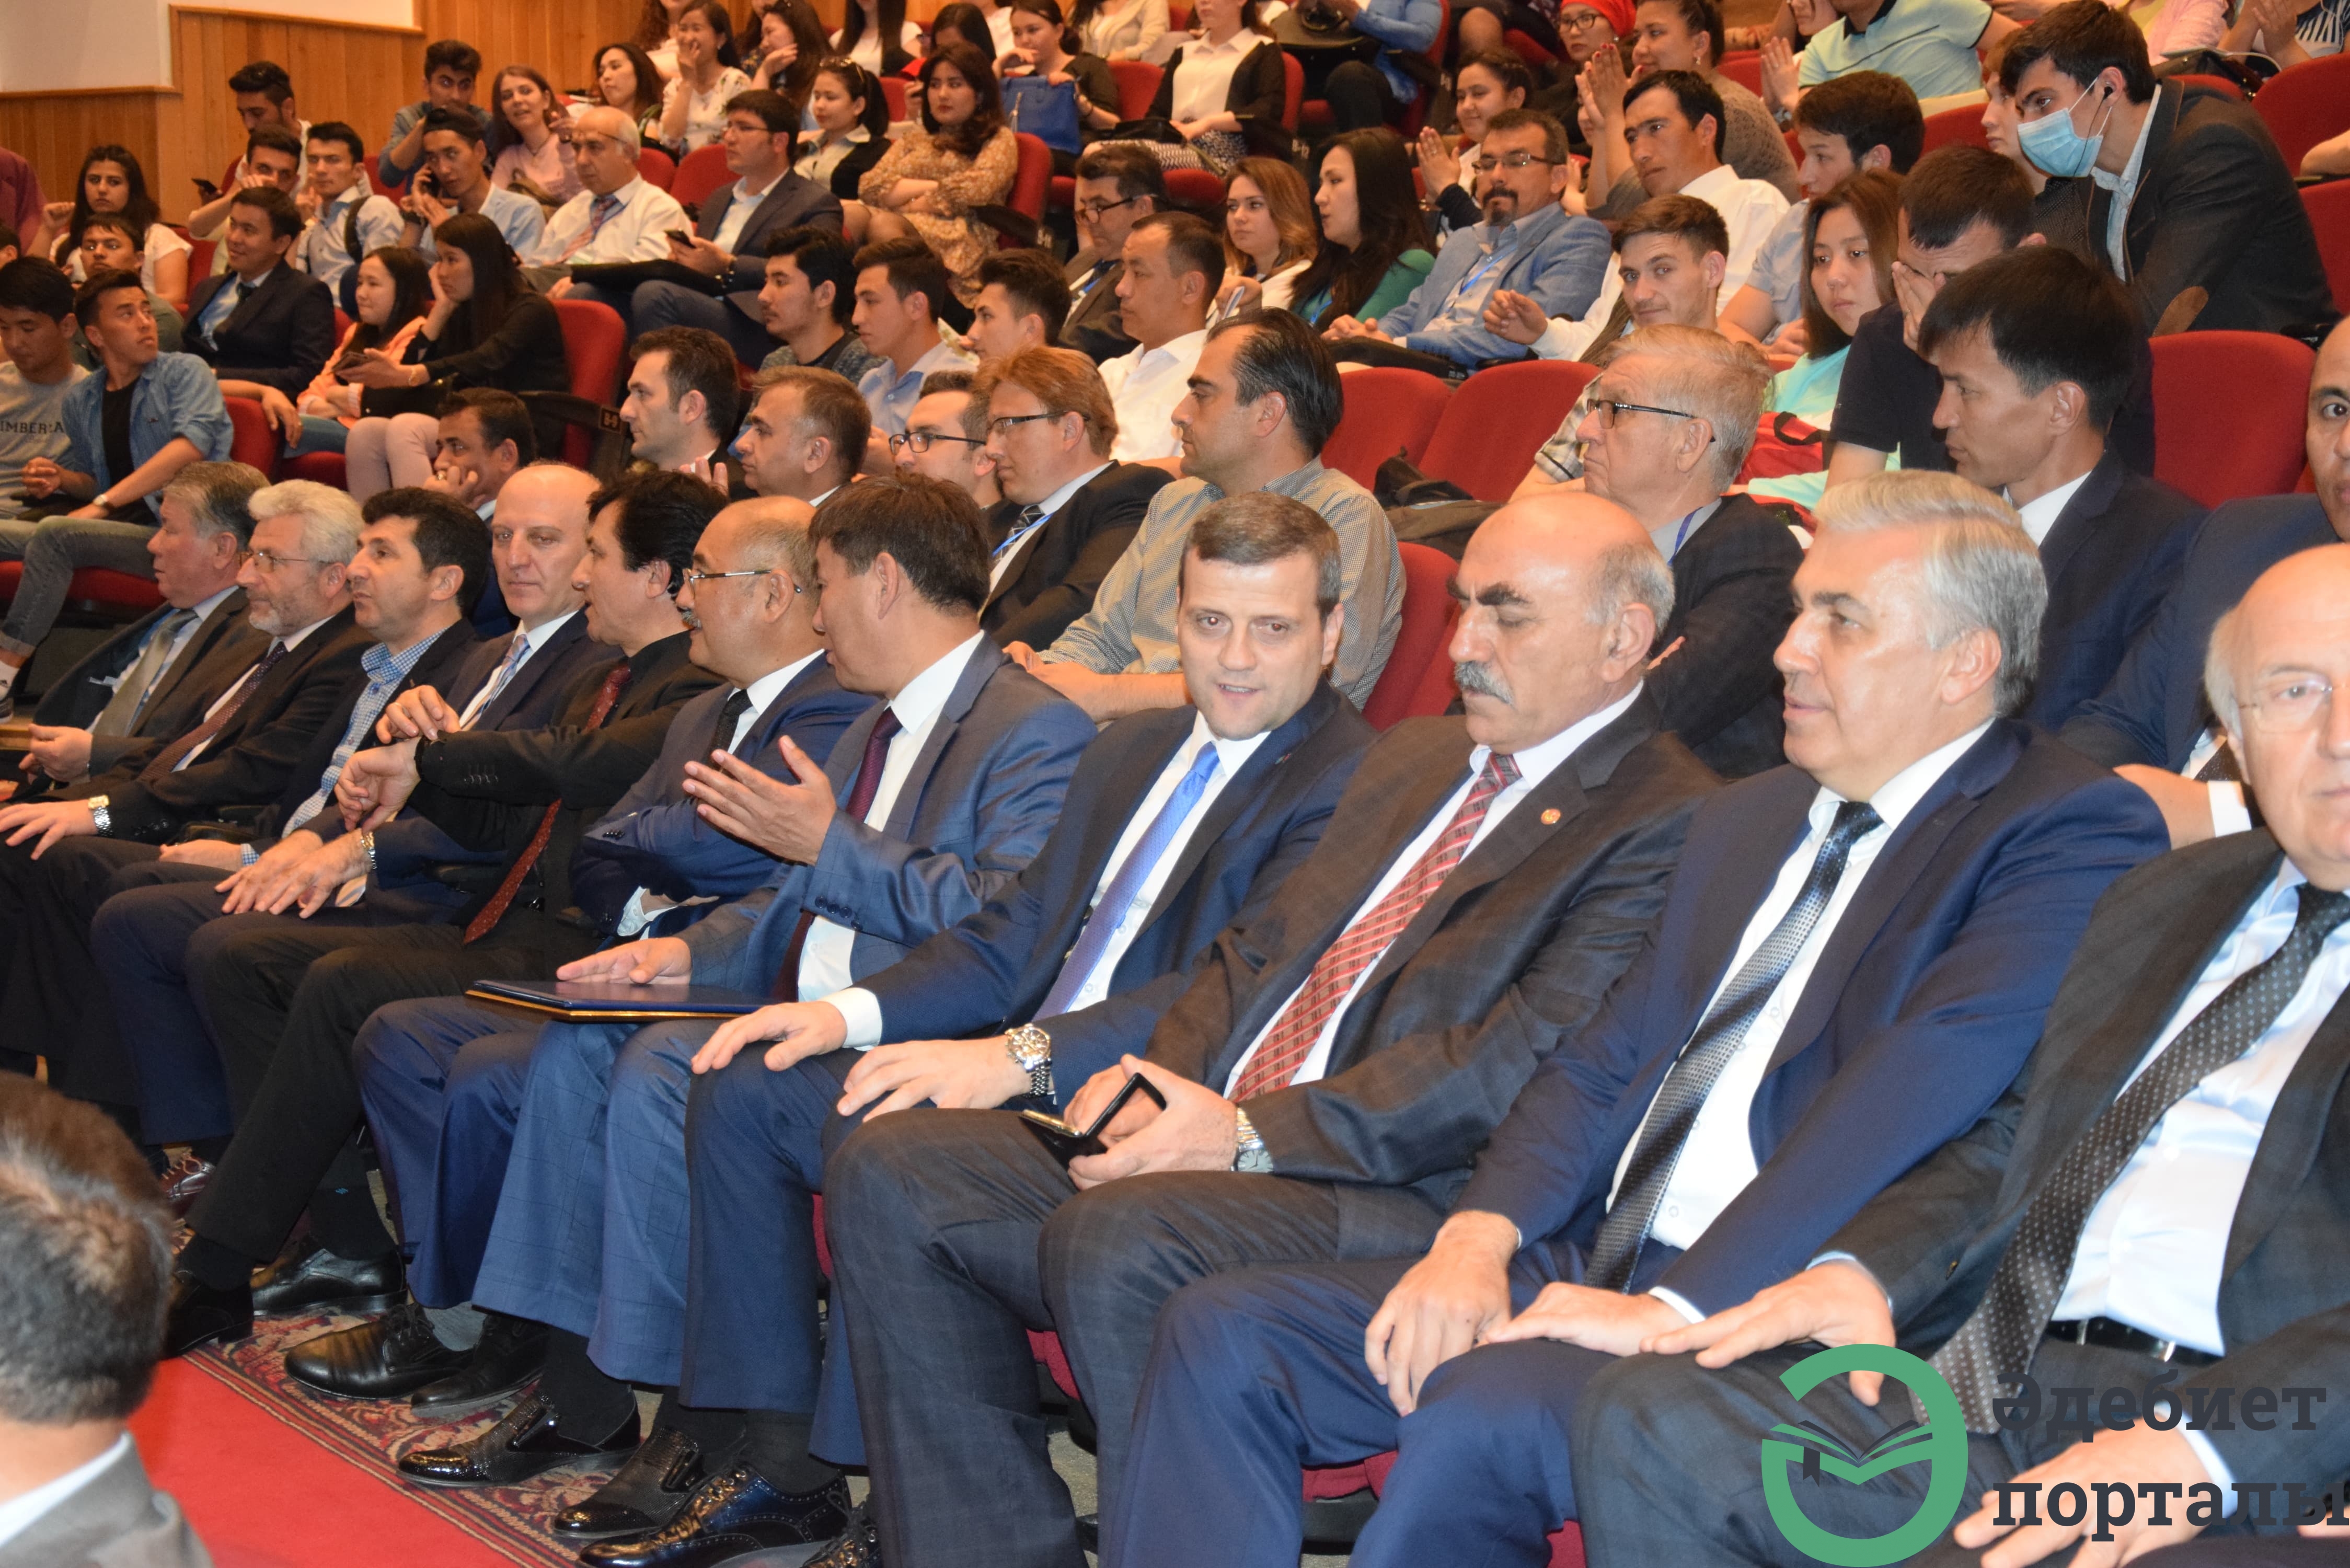 Халықаралық әлеуметтік ғылымдар конгресі: ІІІ Түркістан форумы  - фото 98 - adebiportal.kz